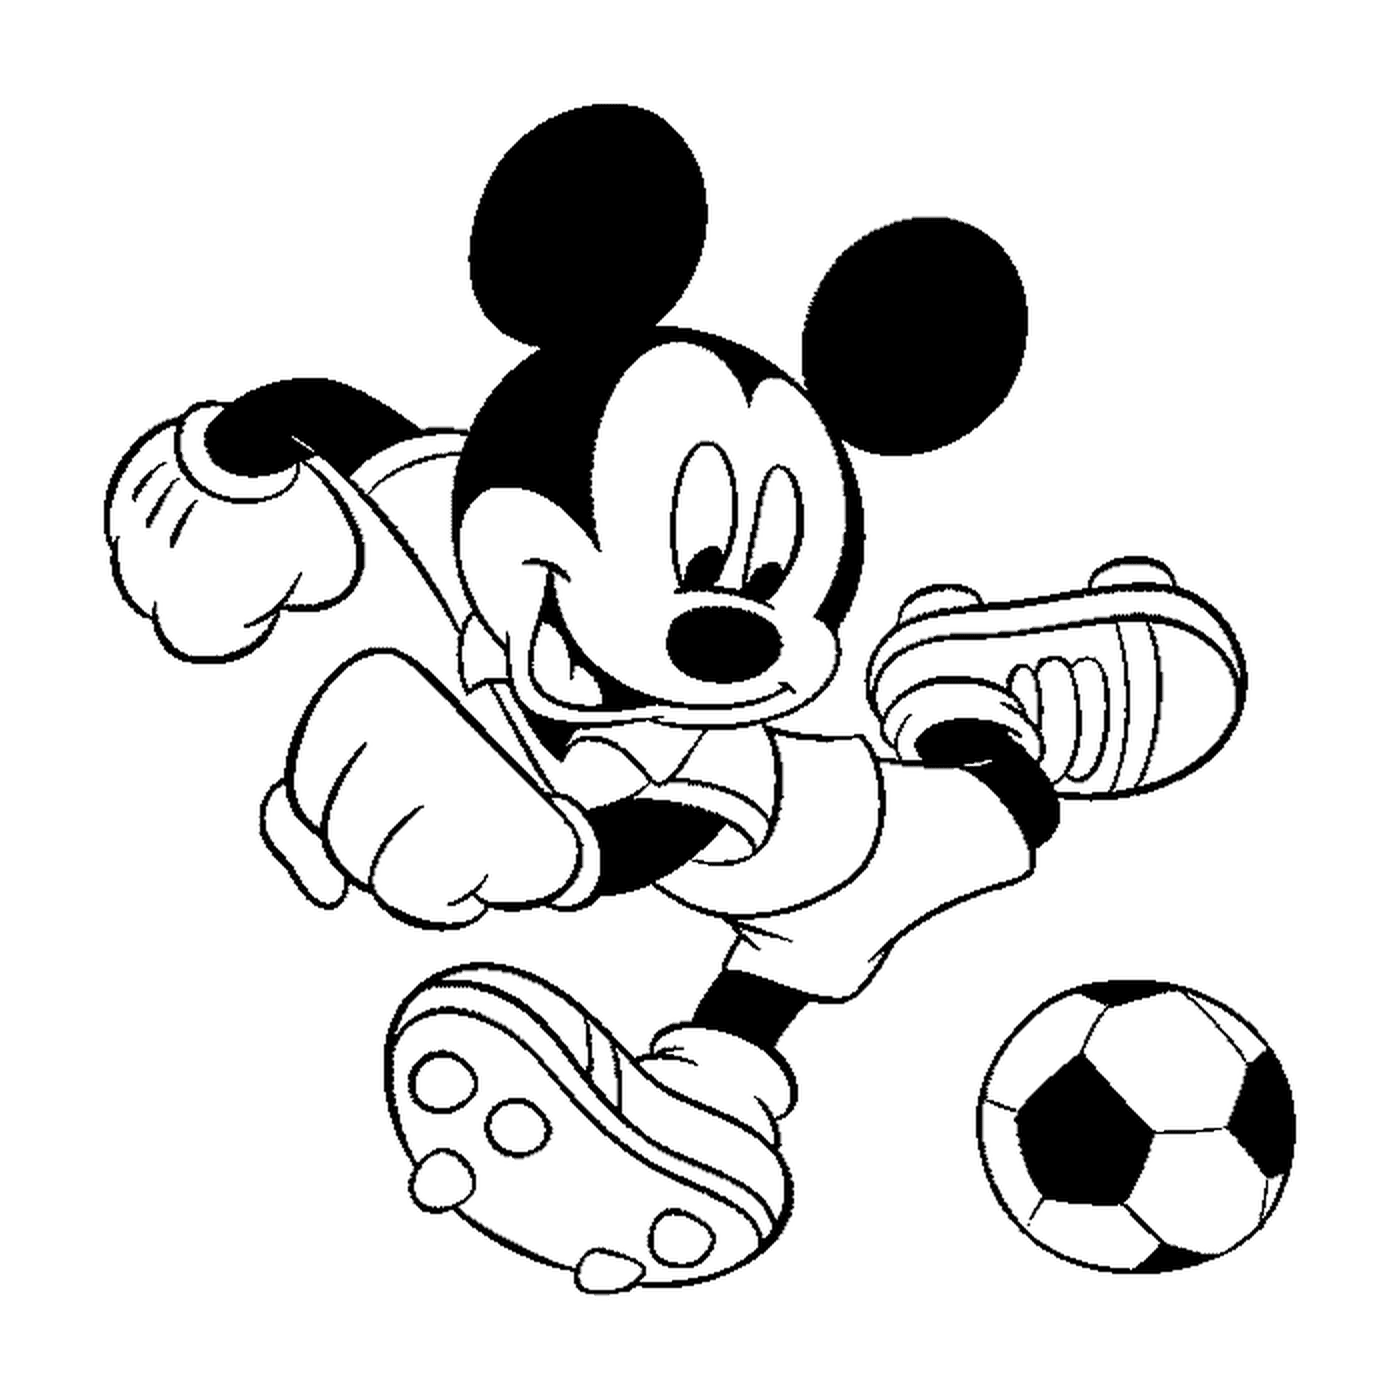  米老鼠喜欢橄榄球 